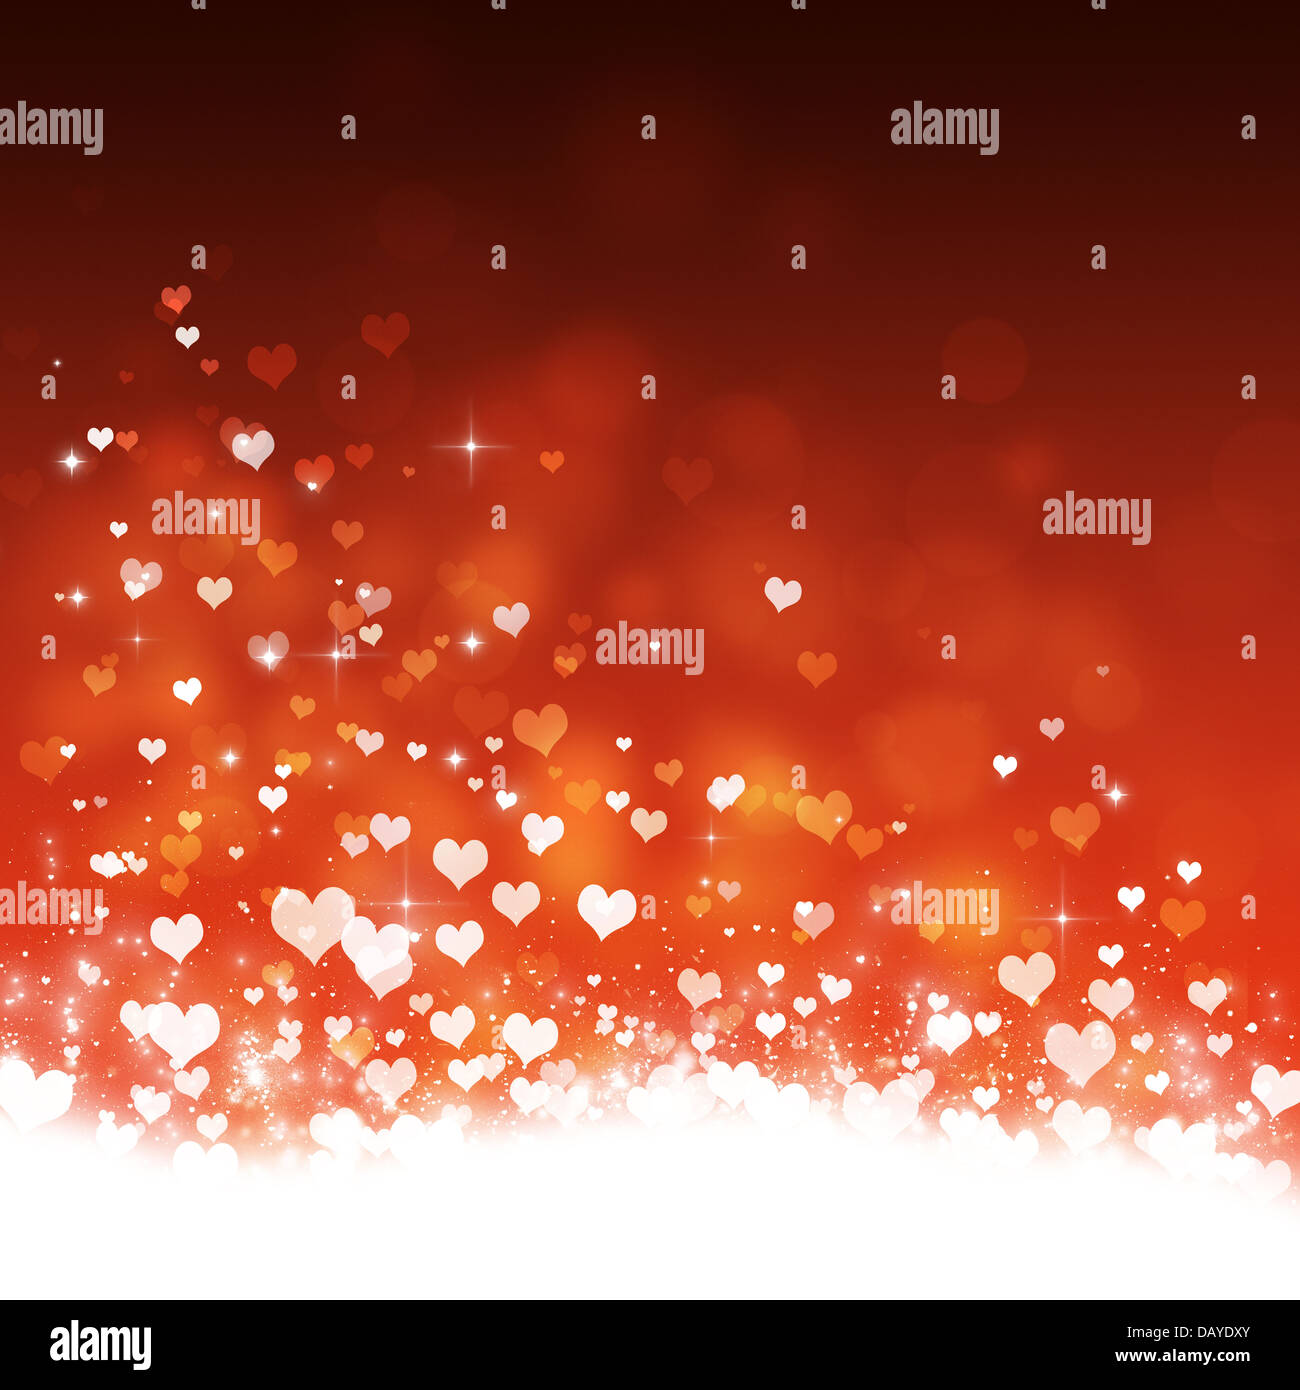 delightful valentine magic flying hearts celebration background Stock Photo